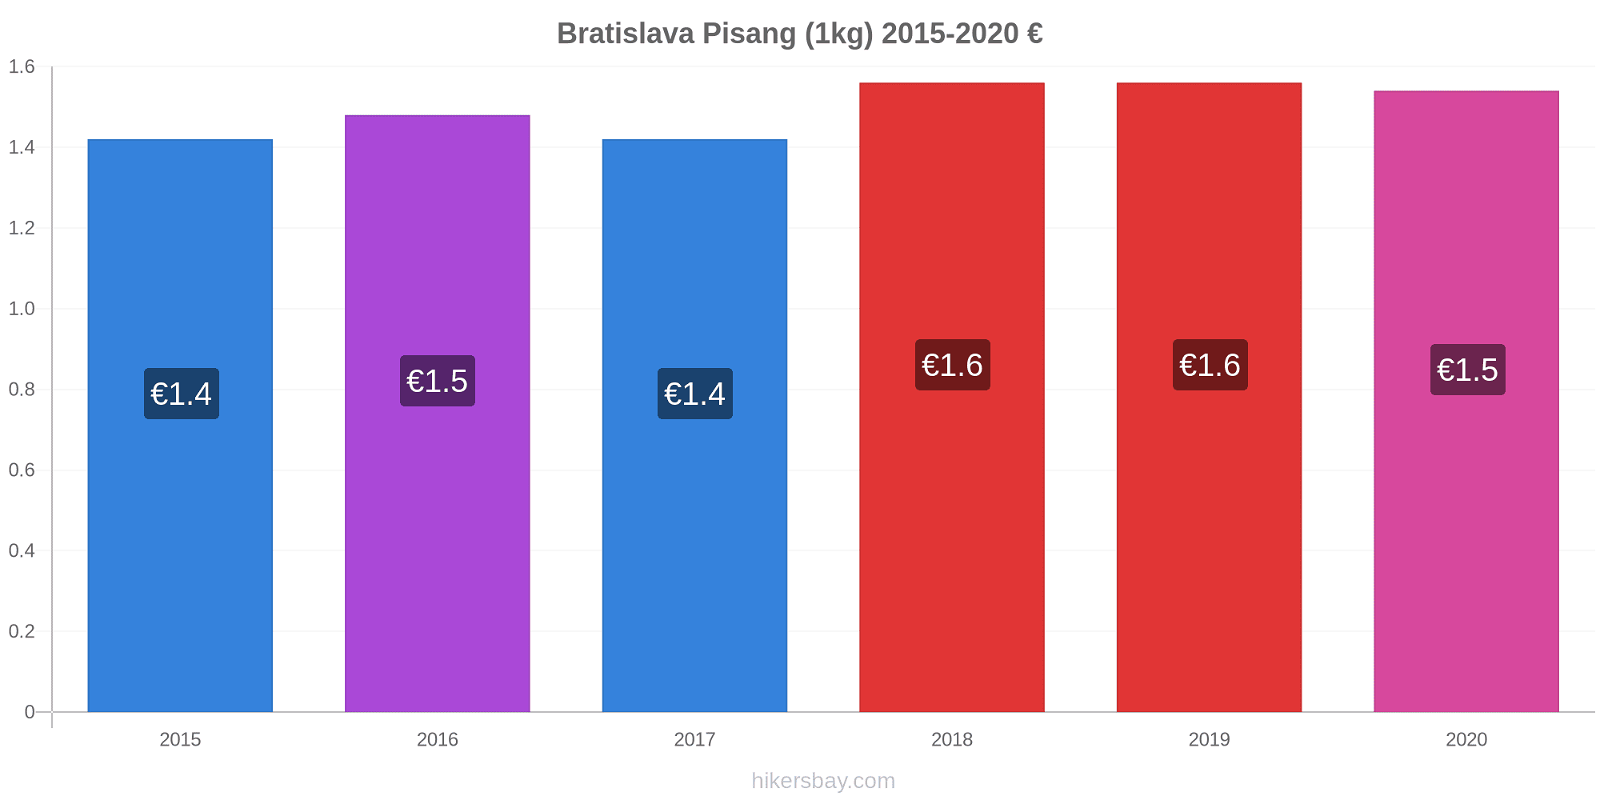 Bratislava perubahan harga Pisang (1kg) hikersbay.com